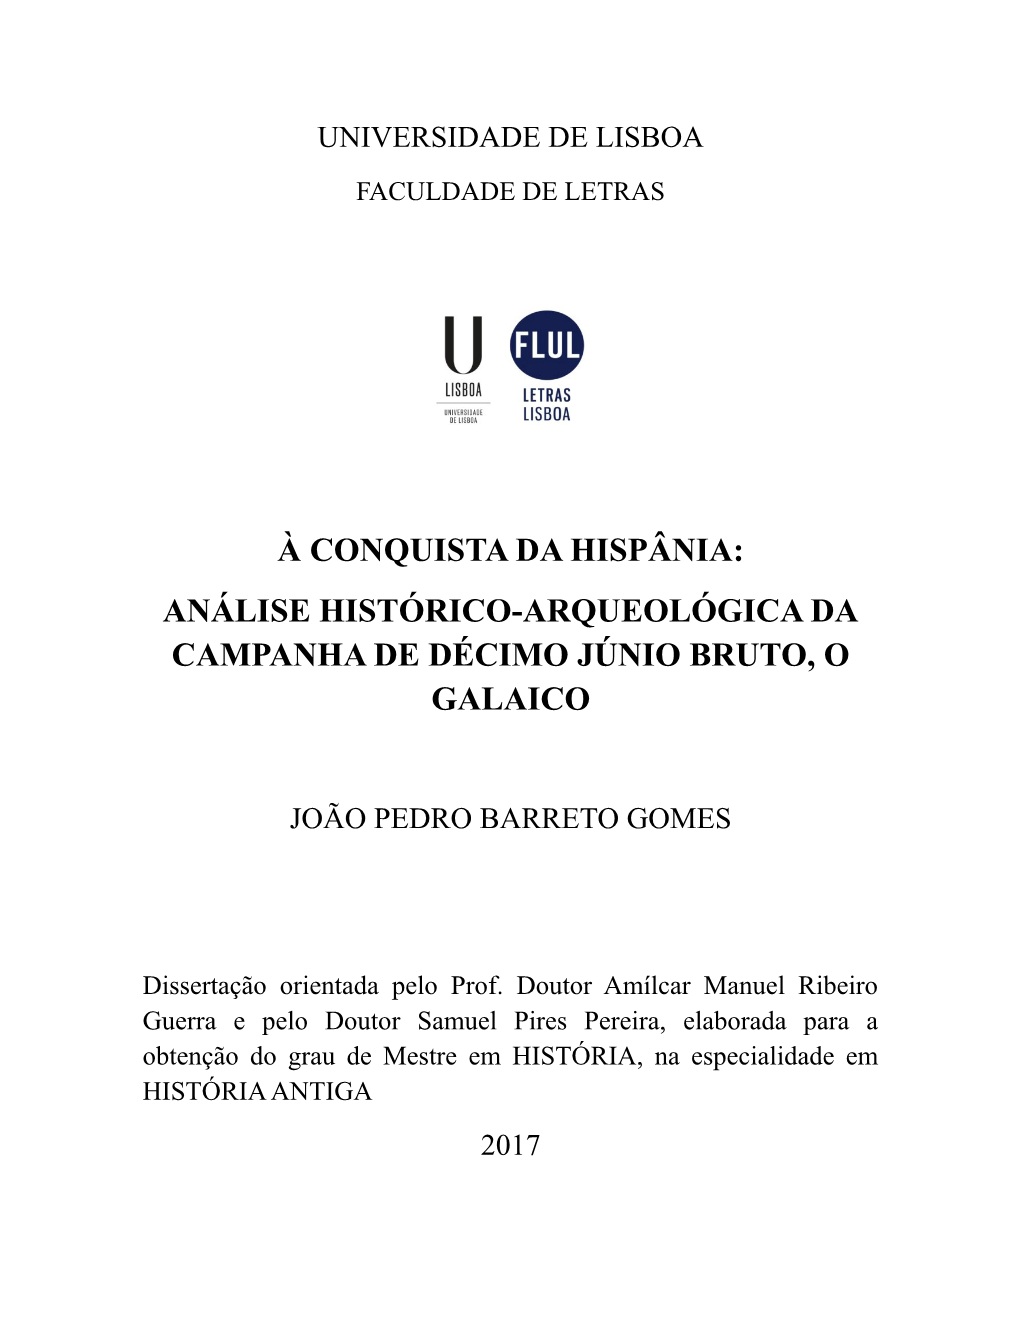 À Conquista Da Hispânia: Análise Histórico-Arqueológica Da Campanha De Décimo Júnio Bruto, O Galaico